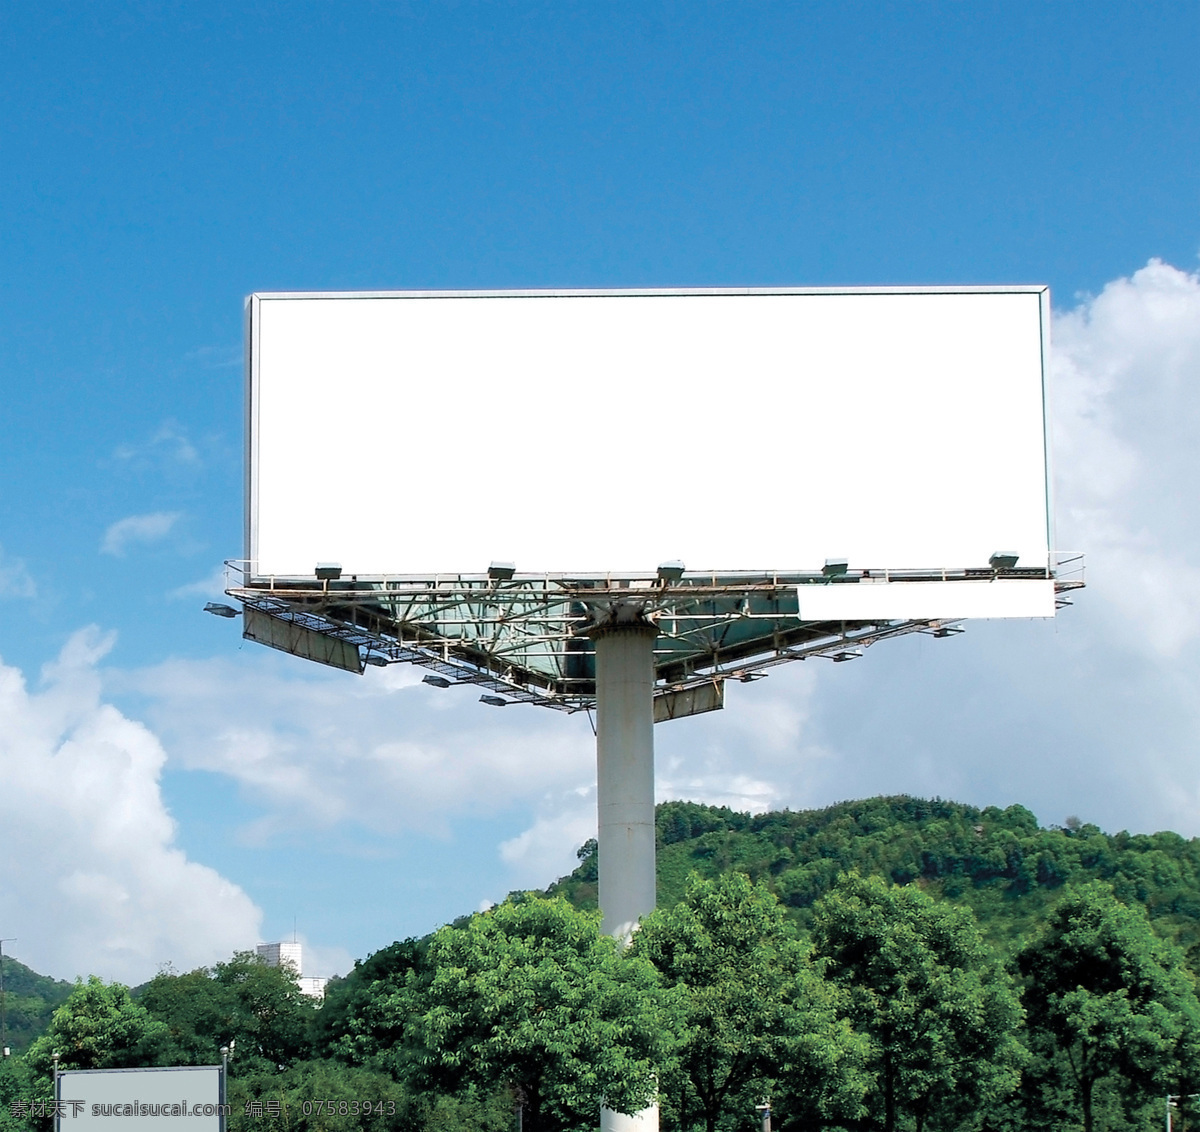 空白广告牌 大型广告牌 柱形广告牌 广告牌 户外广告牌 广告牌背景 建筑园林